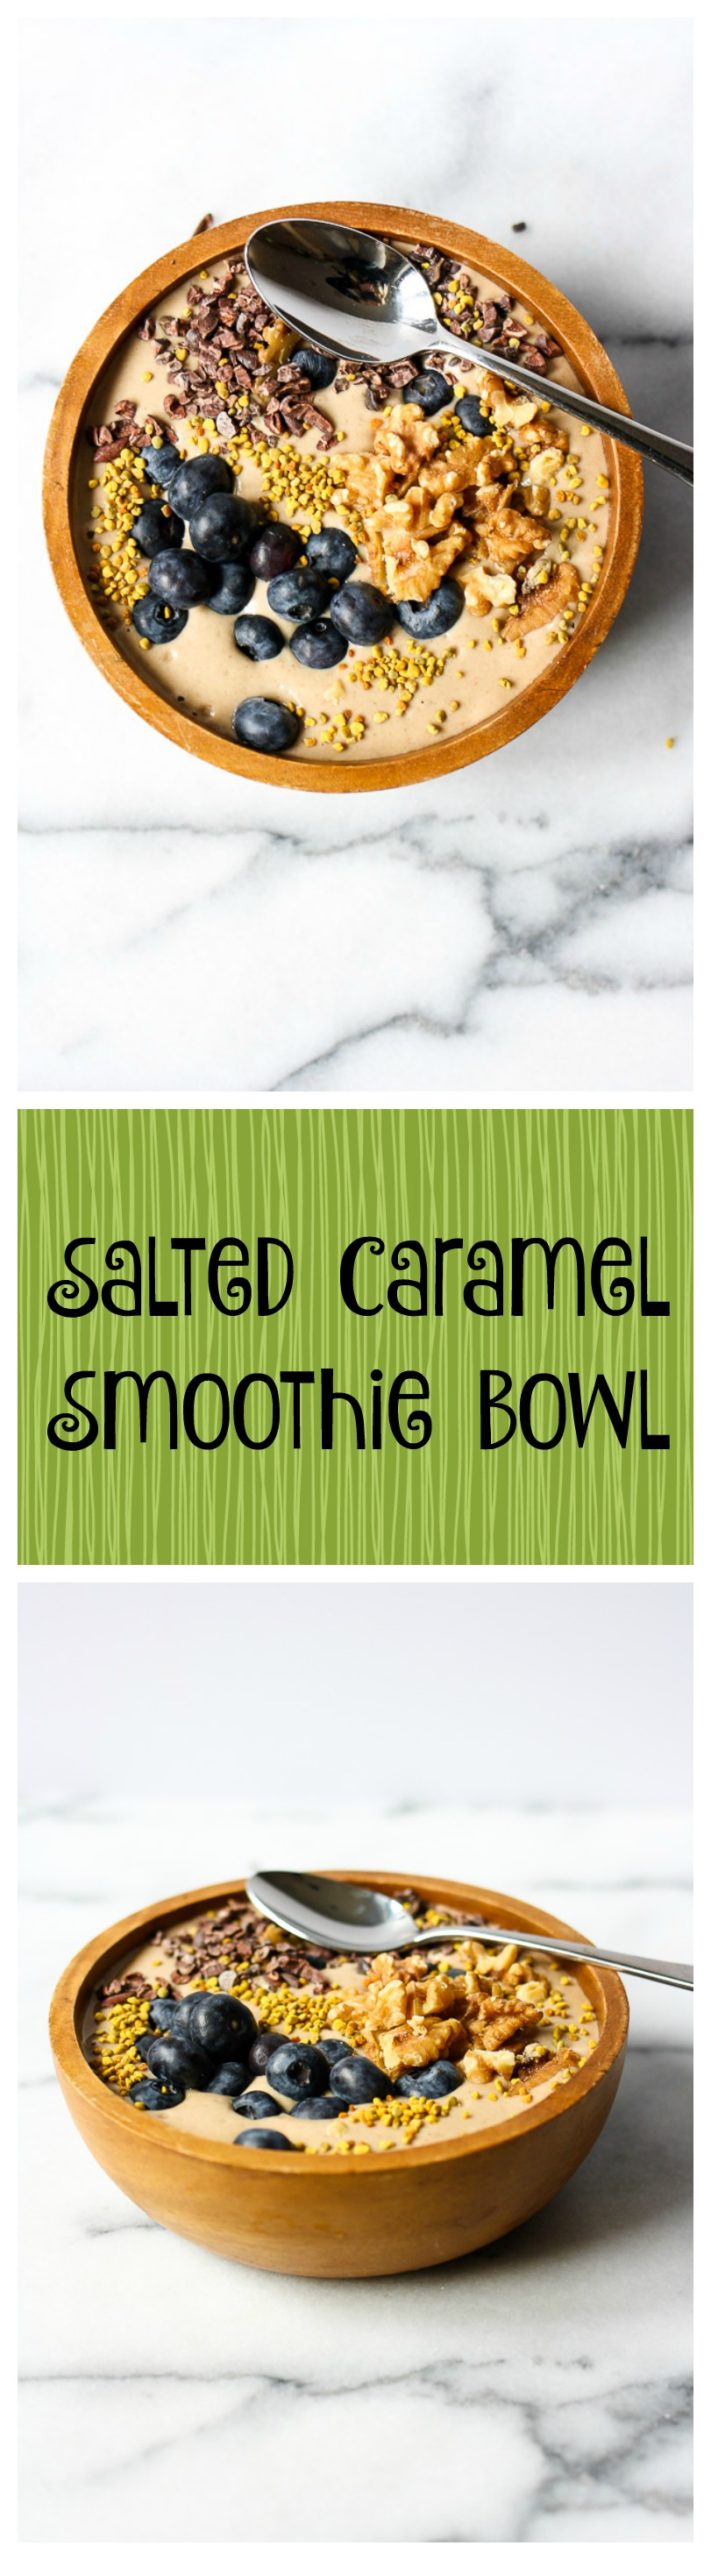 salted caramel smoothie bowl